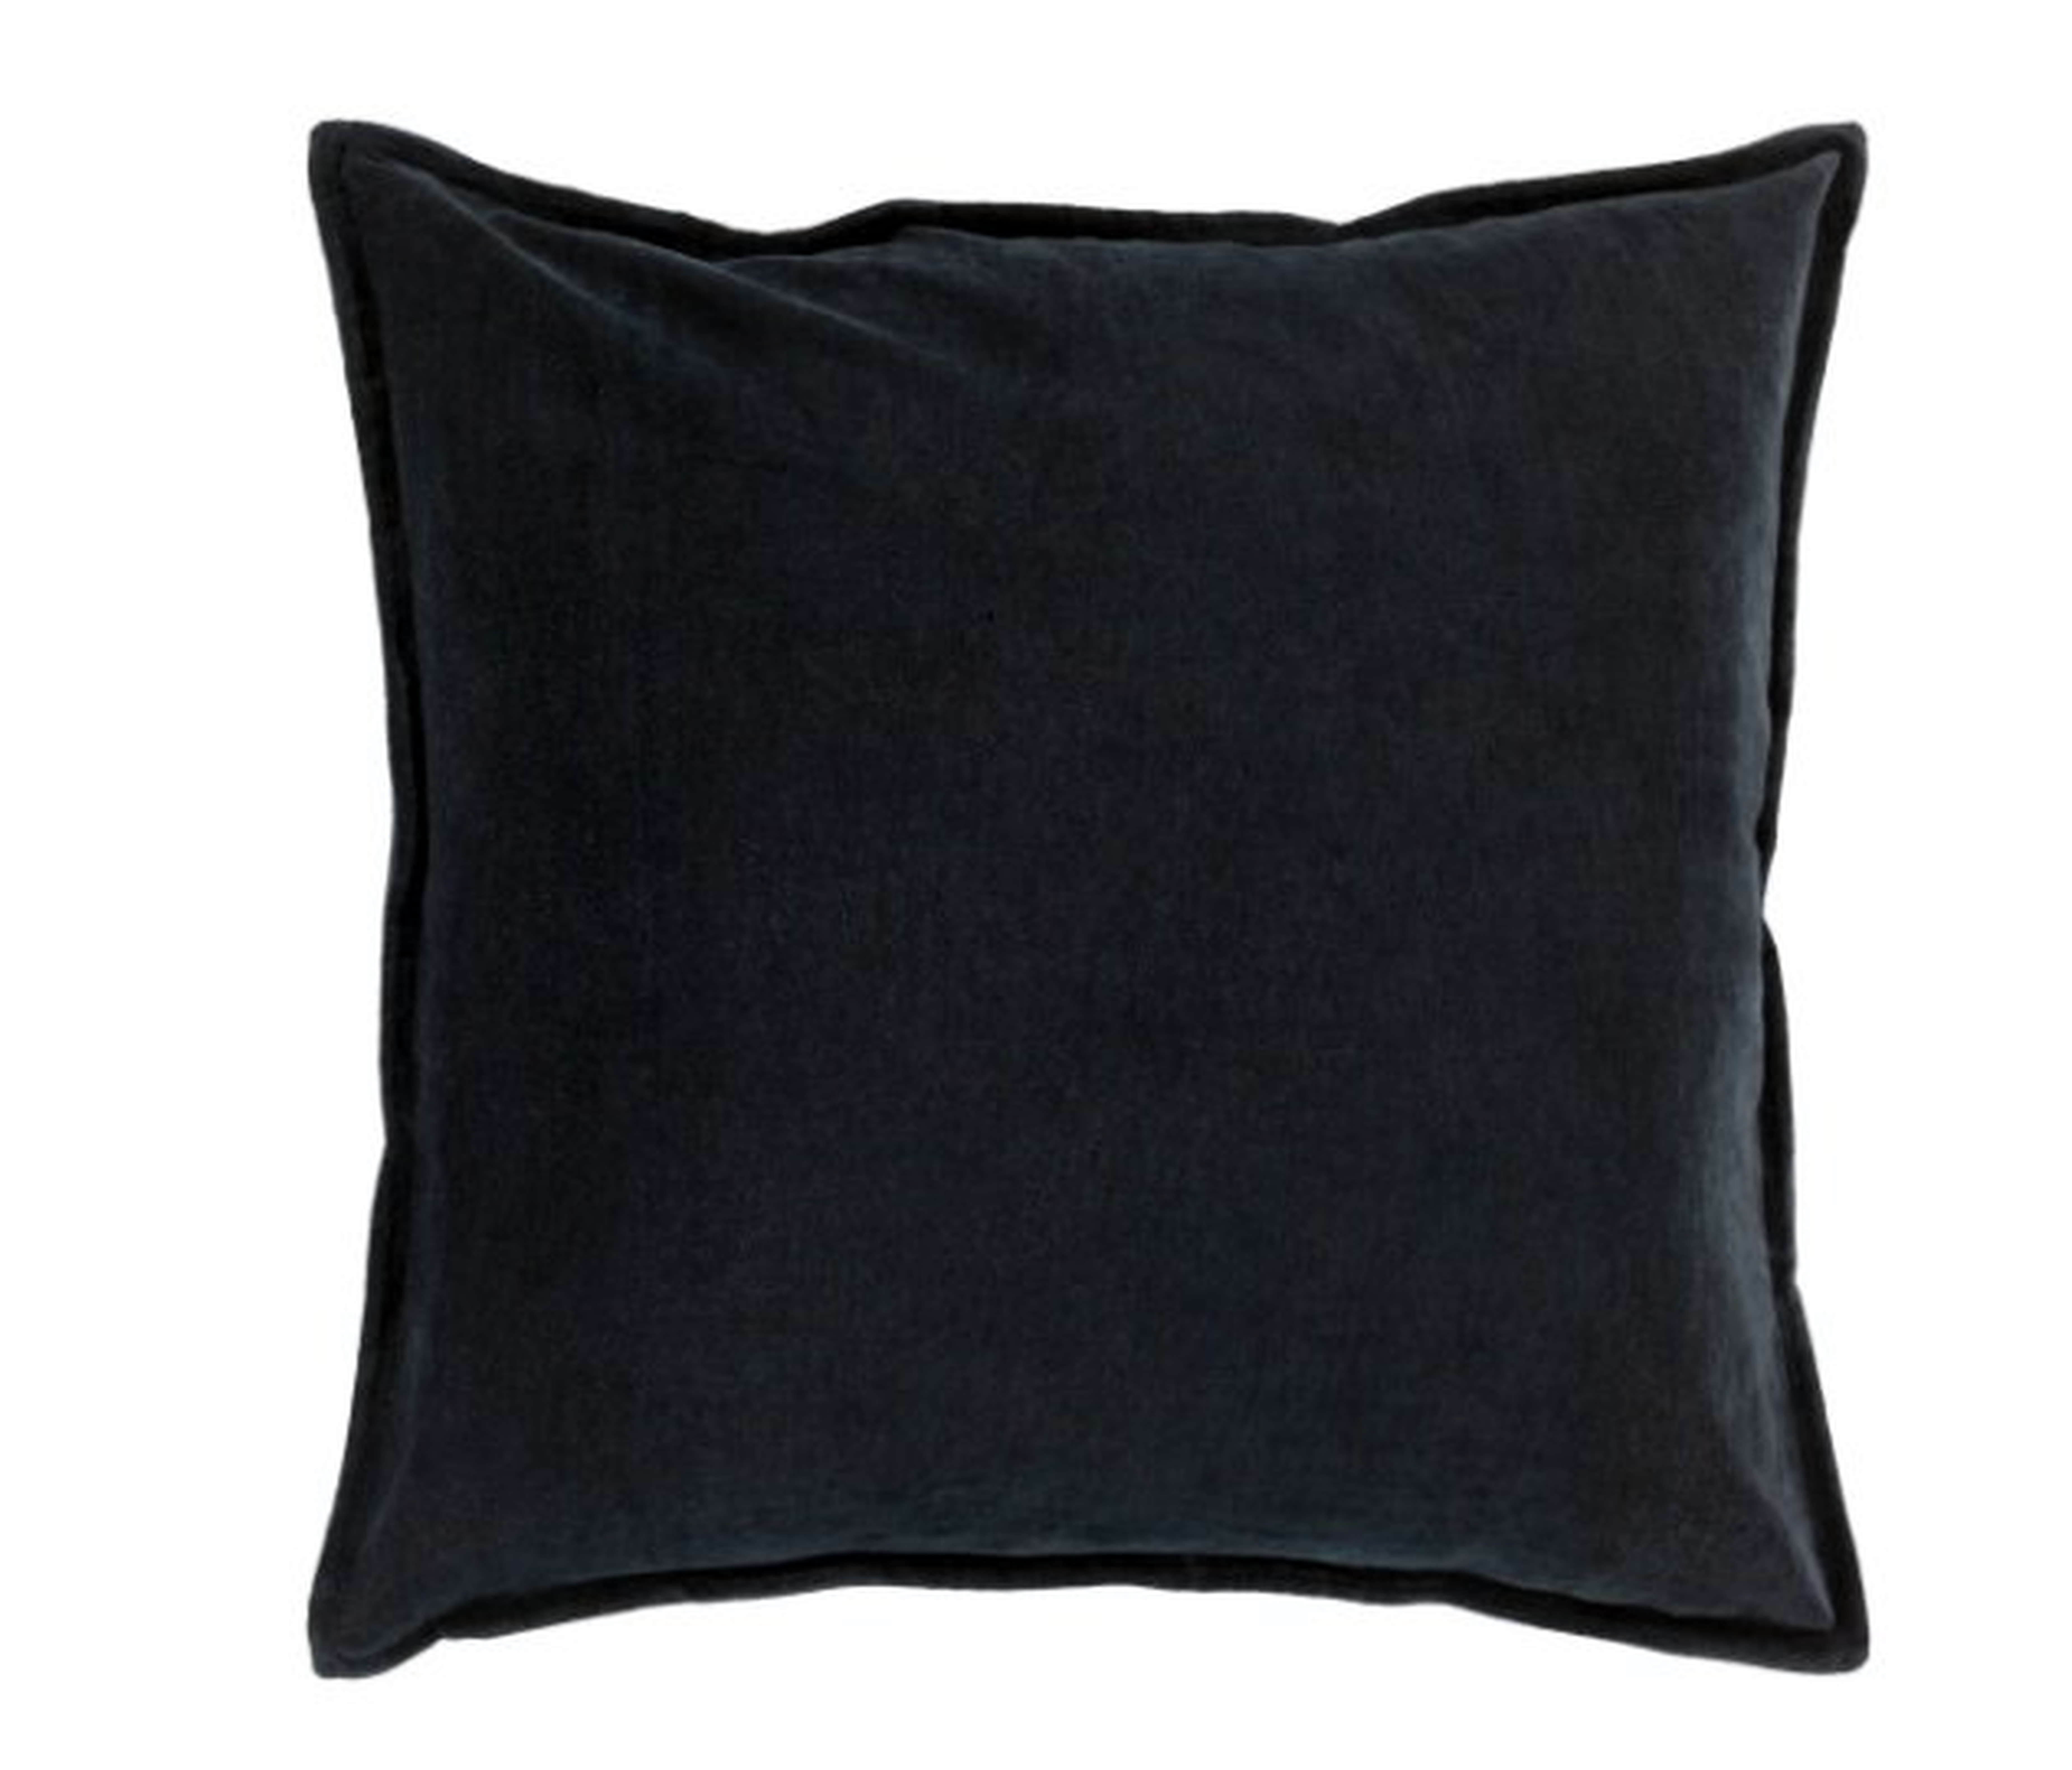 Cotton Velvet Throw Pillow, Black, 18" x 18" - Surya